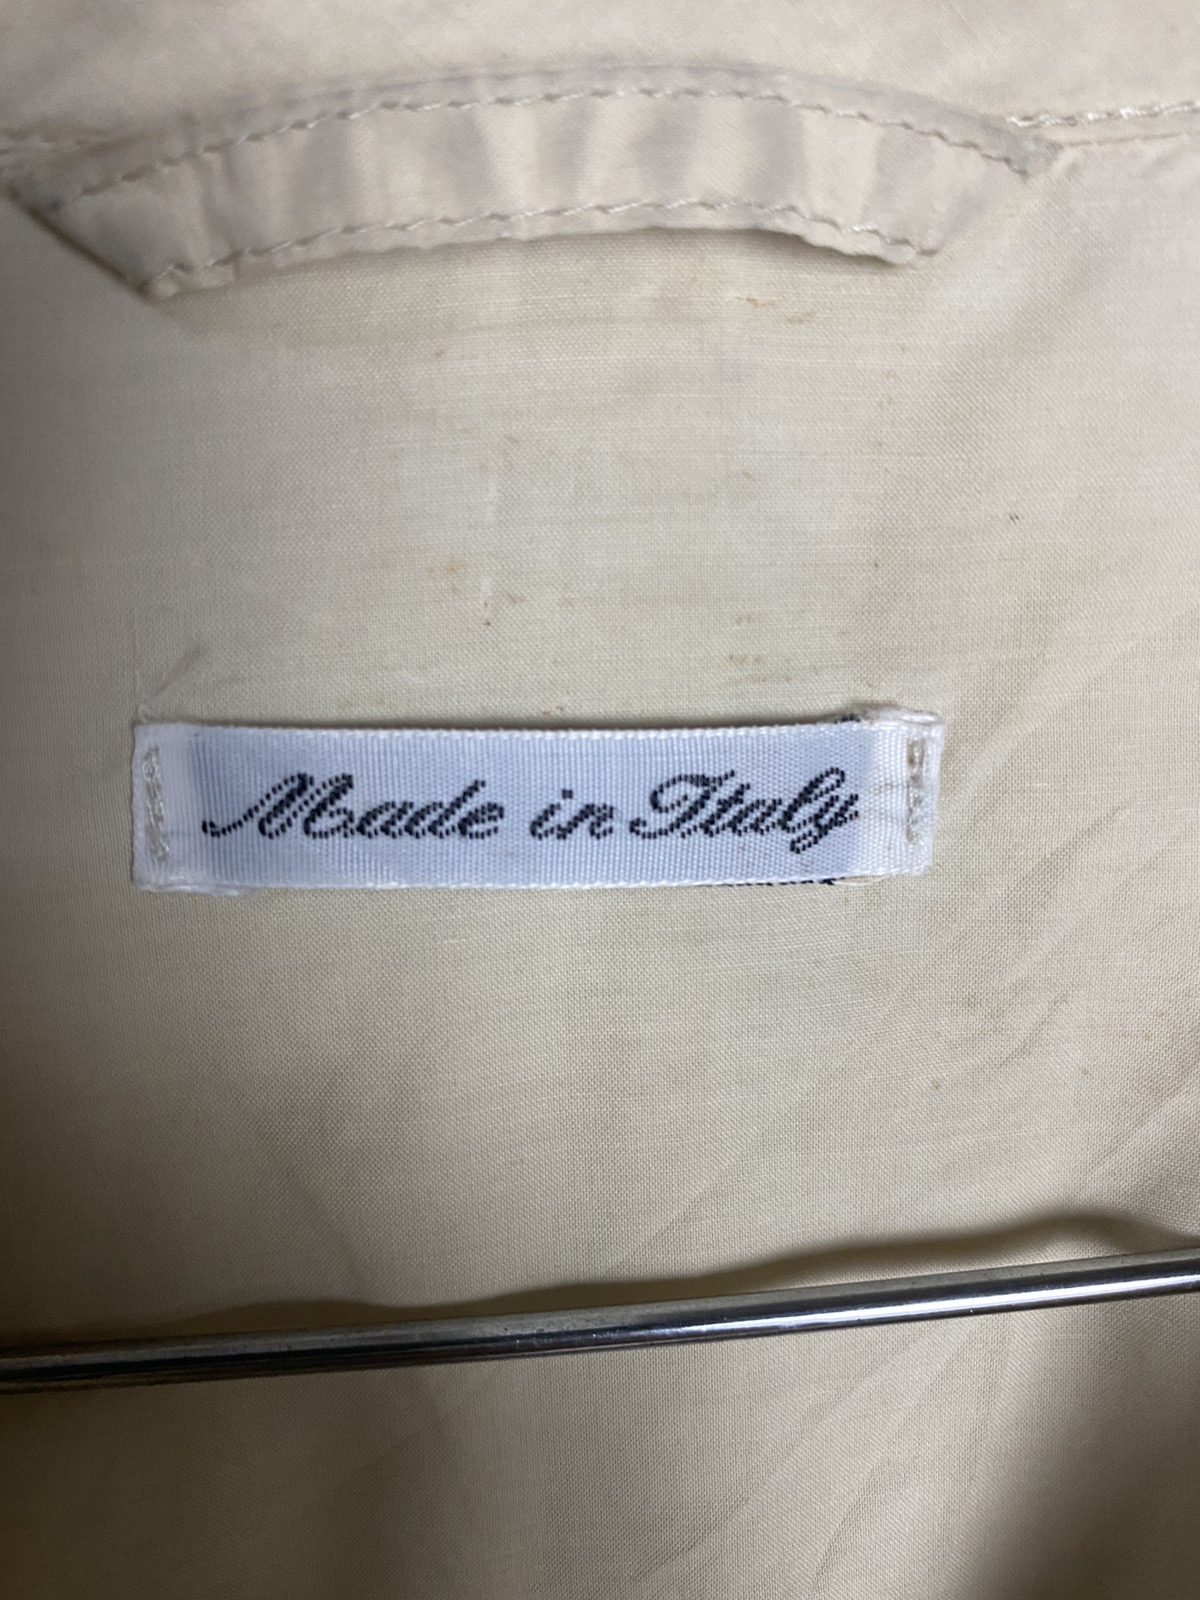 Giorgio Armani - Giorgio Armani Long Coat Jacket Made in Italy - 5